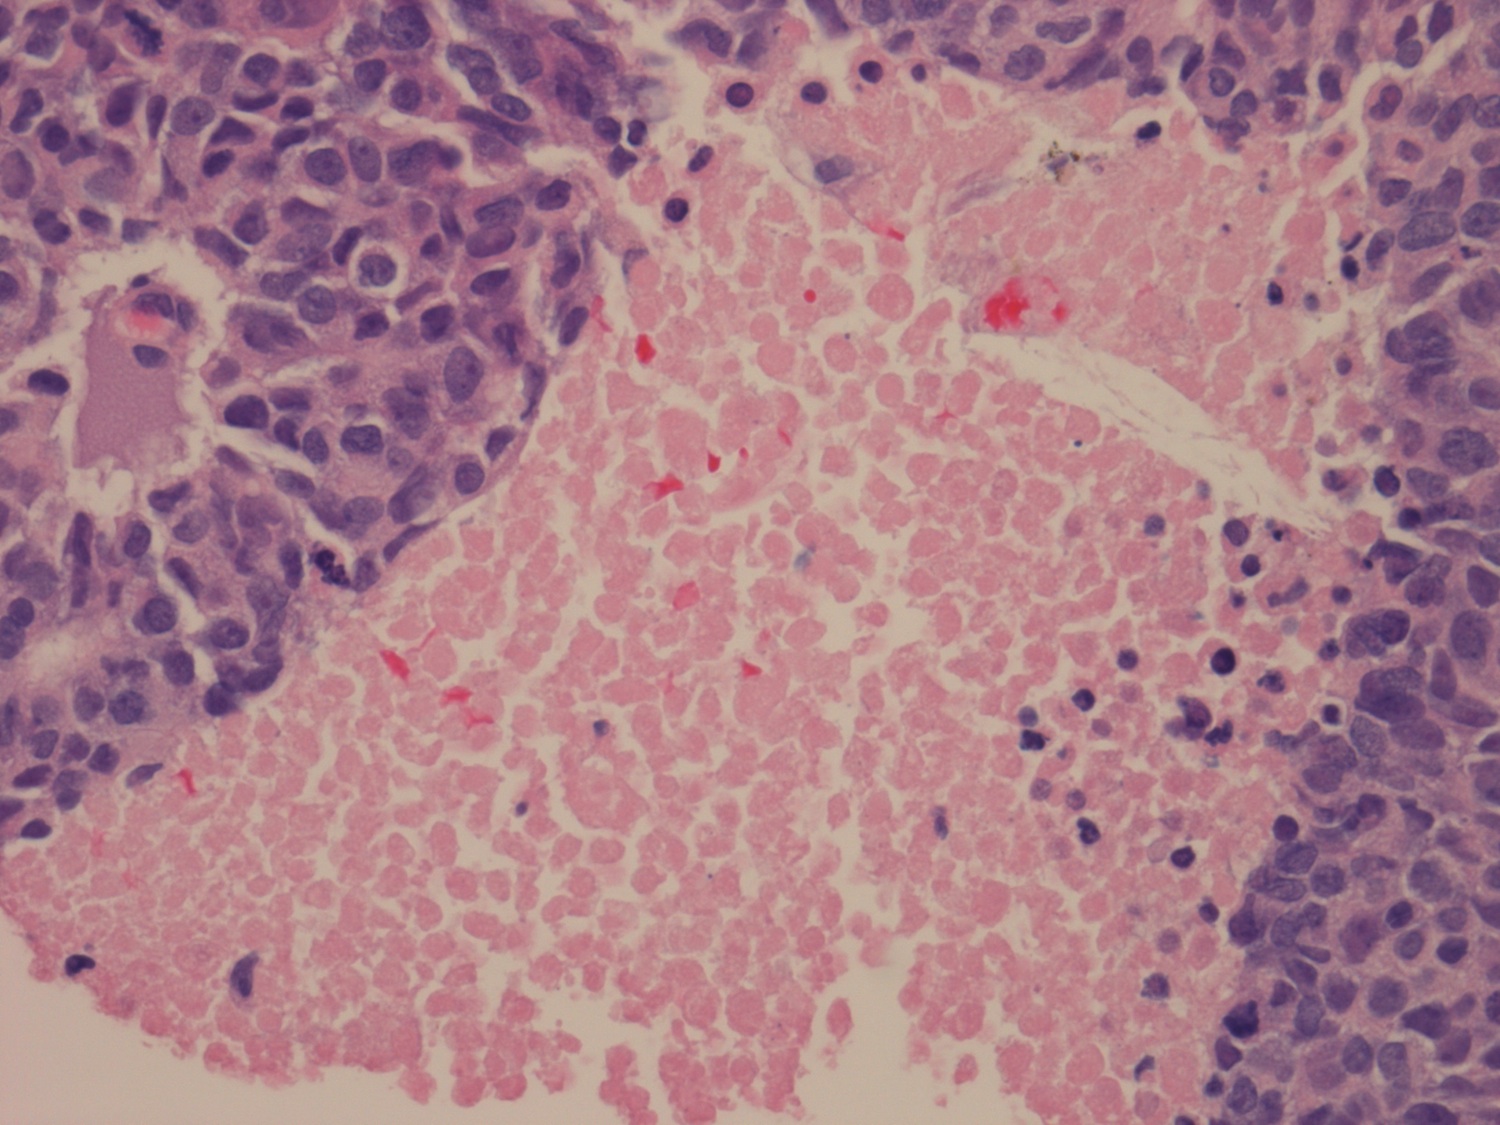 neuroendocrine carcinoma prostate pathology outlines